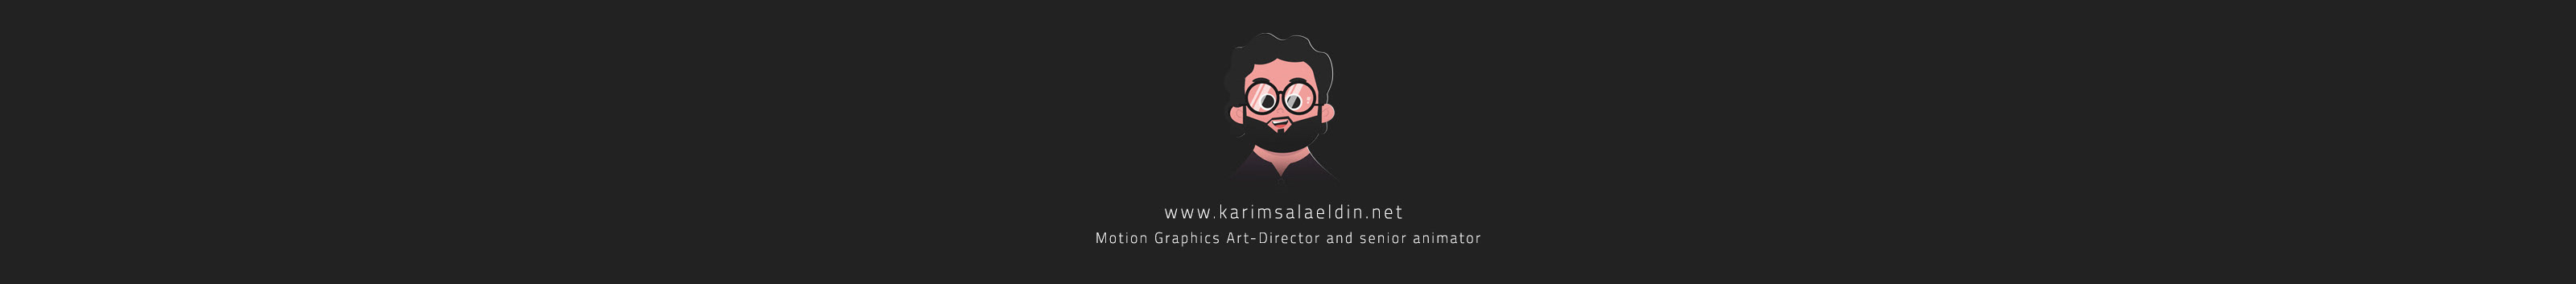 karim Salah El-Din's profile banner